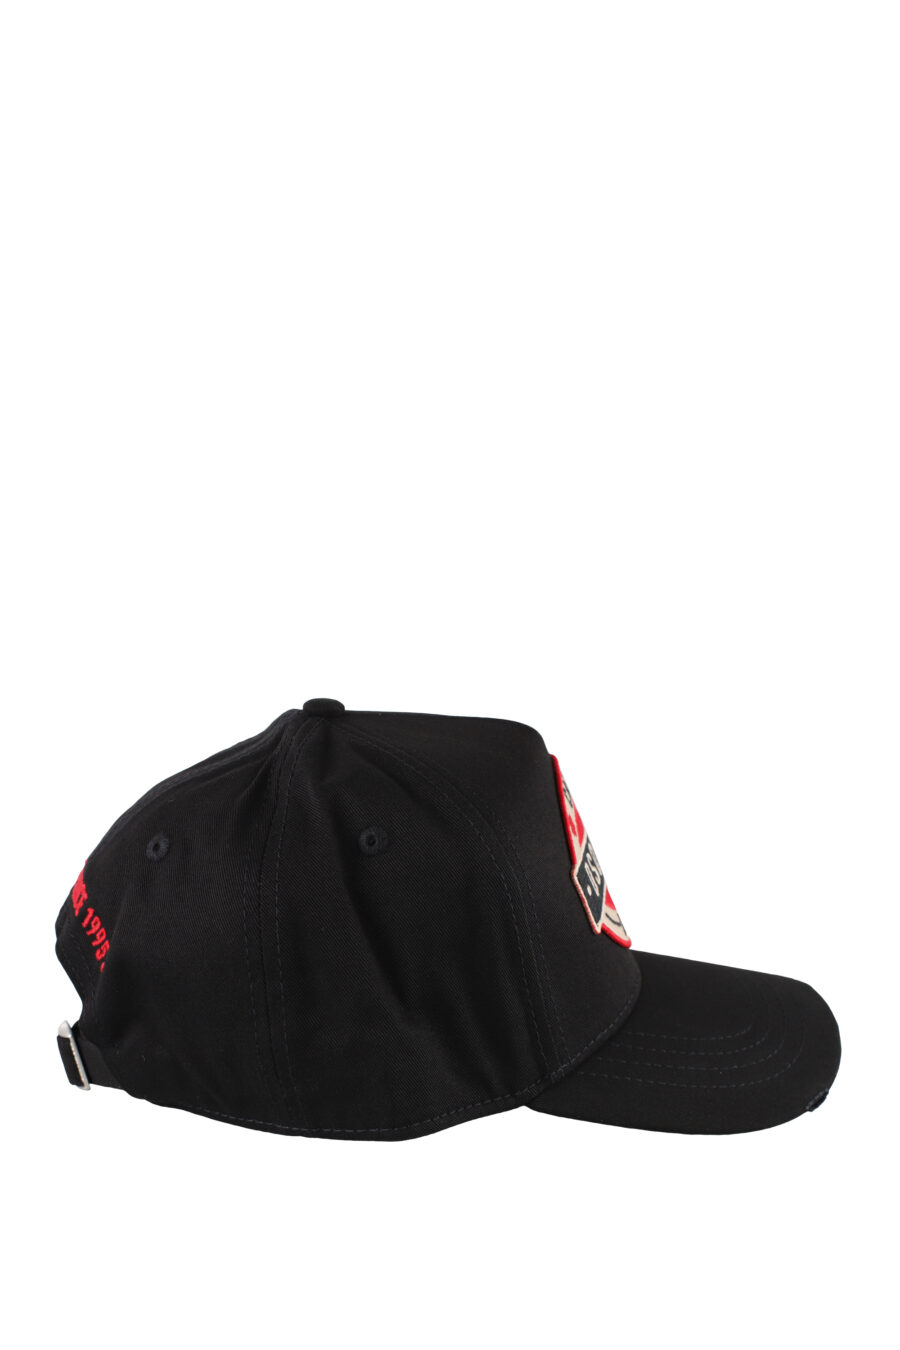 Schwarze Mütze mit Aufnäher und roten Details - IMG 5170